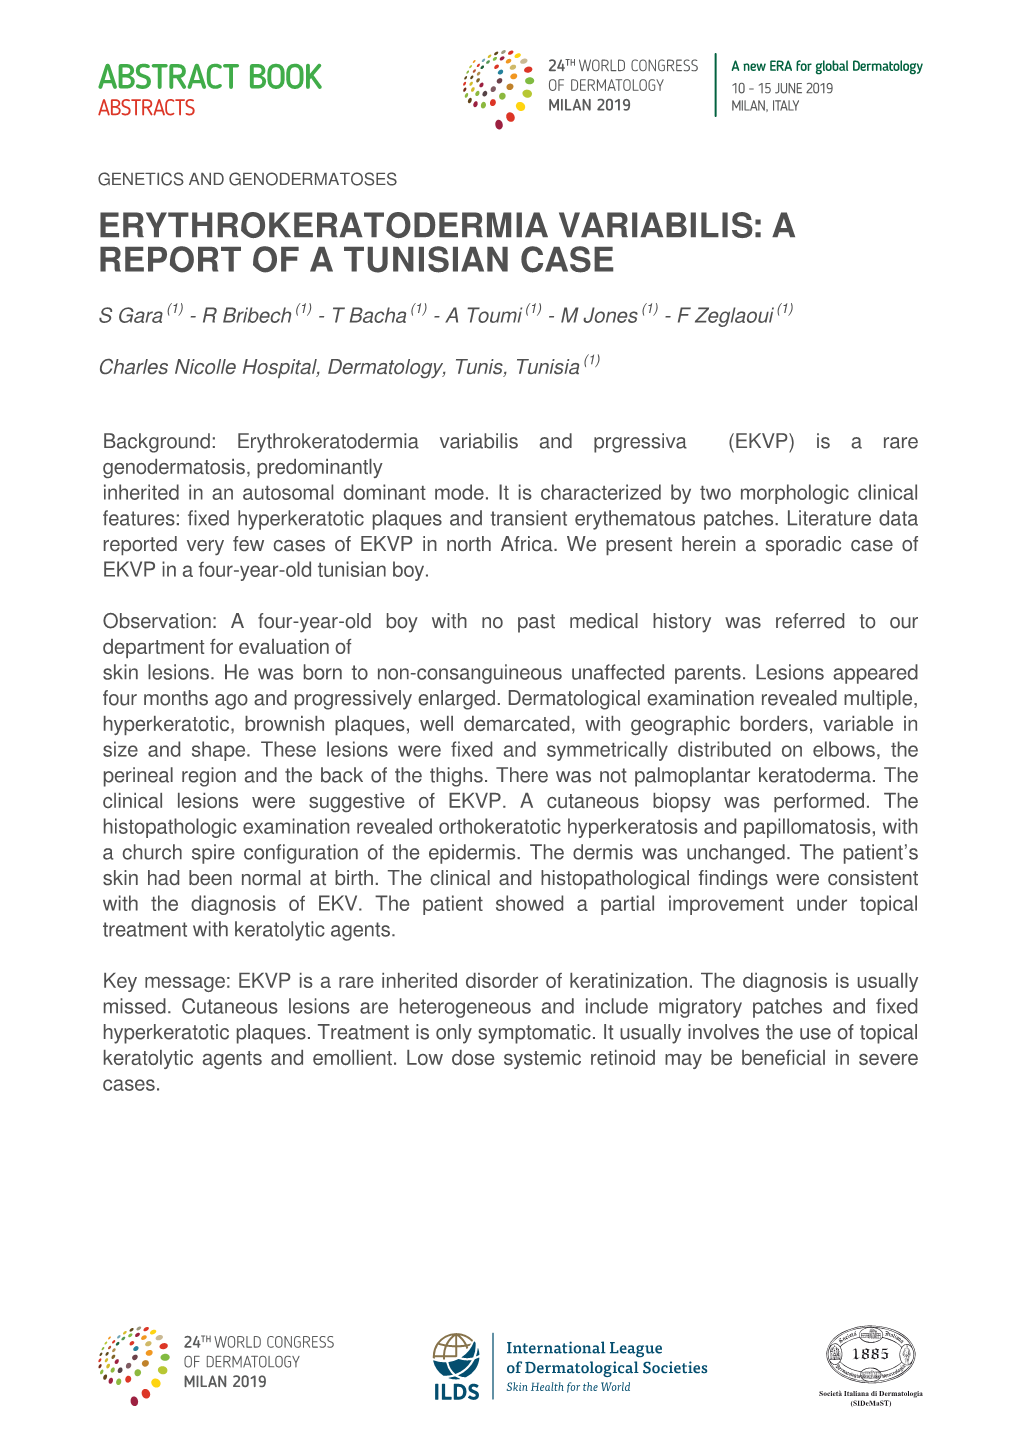 Erythrokeratodermia Variabilis: a Report of a Tunisian Case